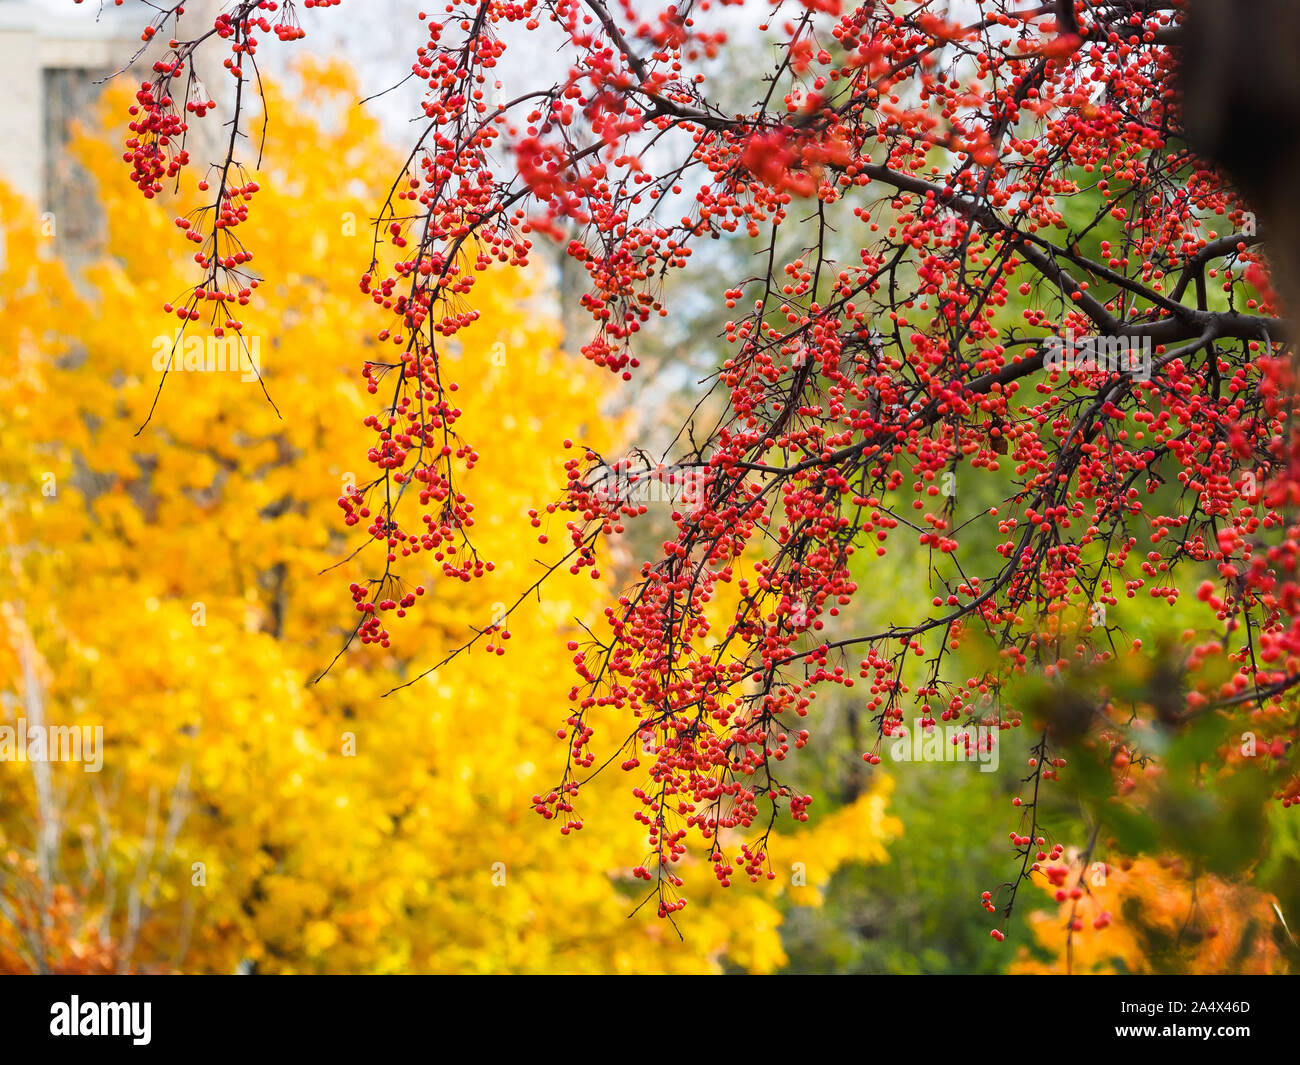 Wunderschöne, kleine rote Früchte auf chinesische Crab Apple tree branches  Vor gelb Ahorn Blätter im Herbst aufhängen Stockfotografie - Alamy